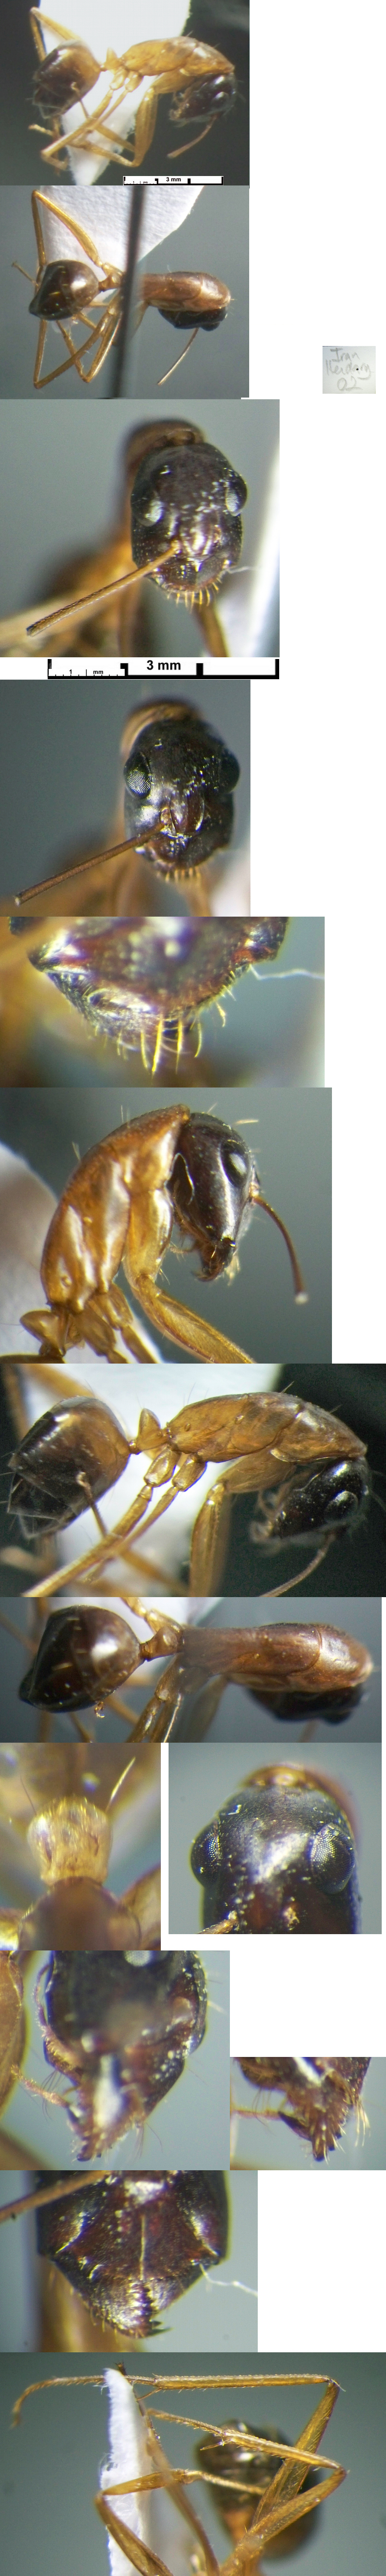 Camponotus turkestanicus minor